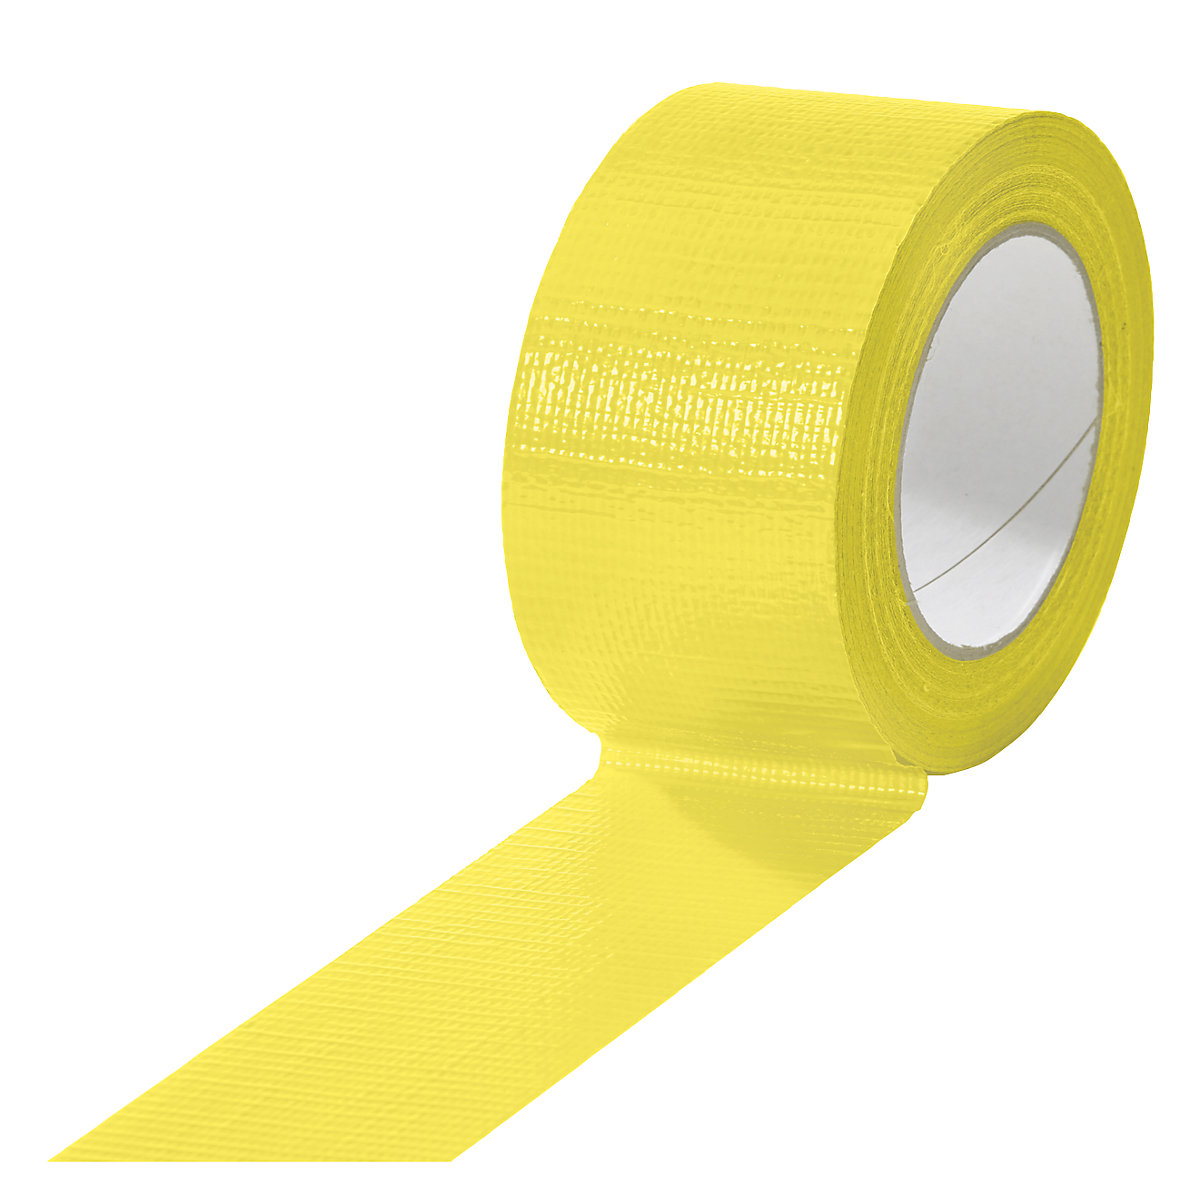 Cinta de tejido, en diferentes colores, UE 18 rollos, amarillo, anchura de cinta 50 mm-6